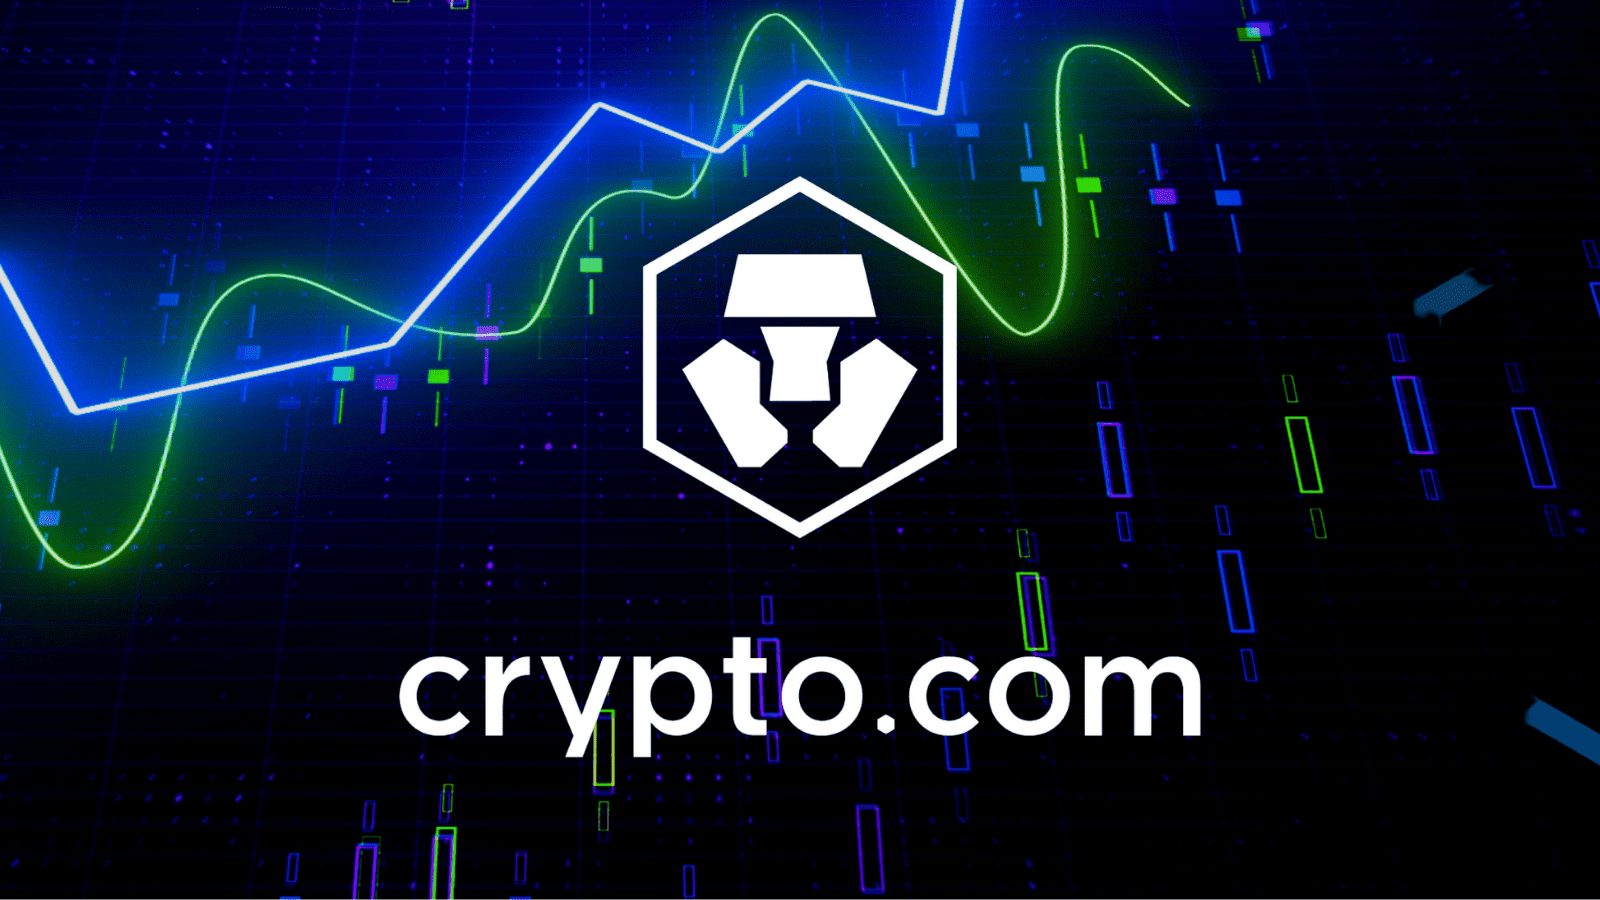 Crypto.com venture